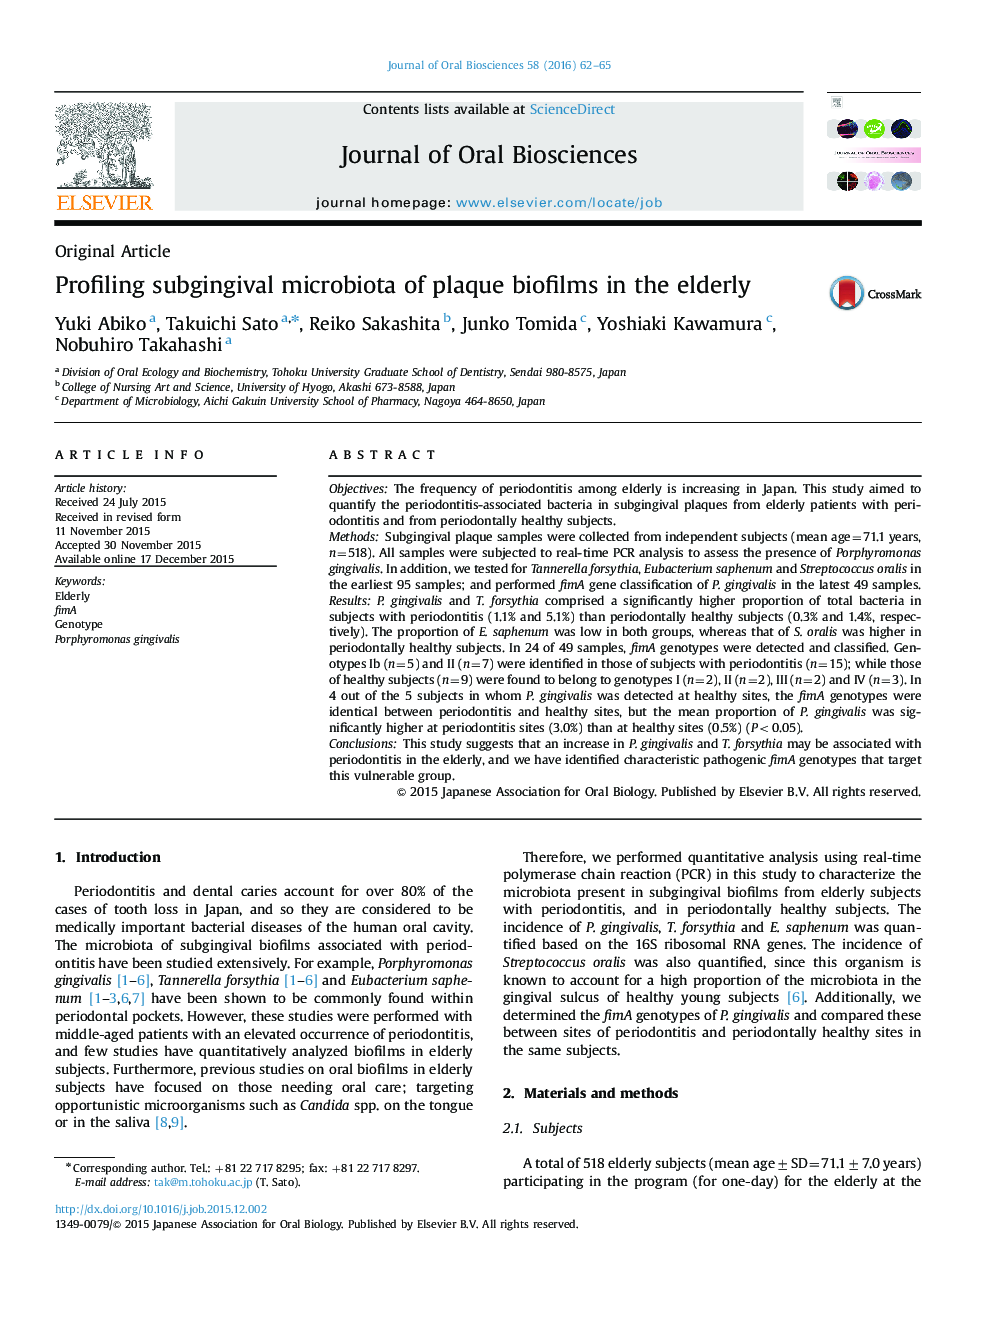 Profiling subgingival microbiota of plaque biofilms in the elderly